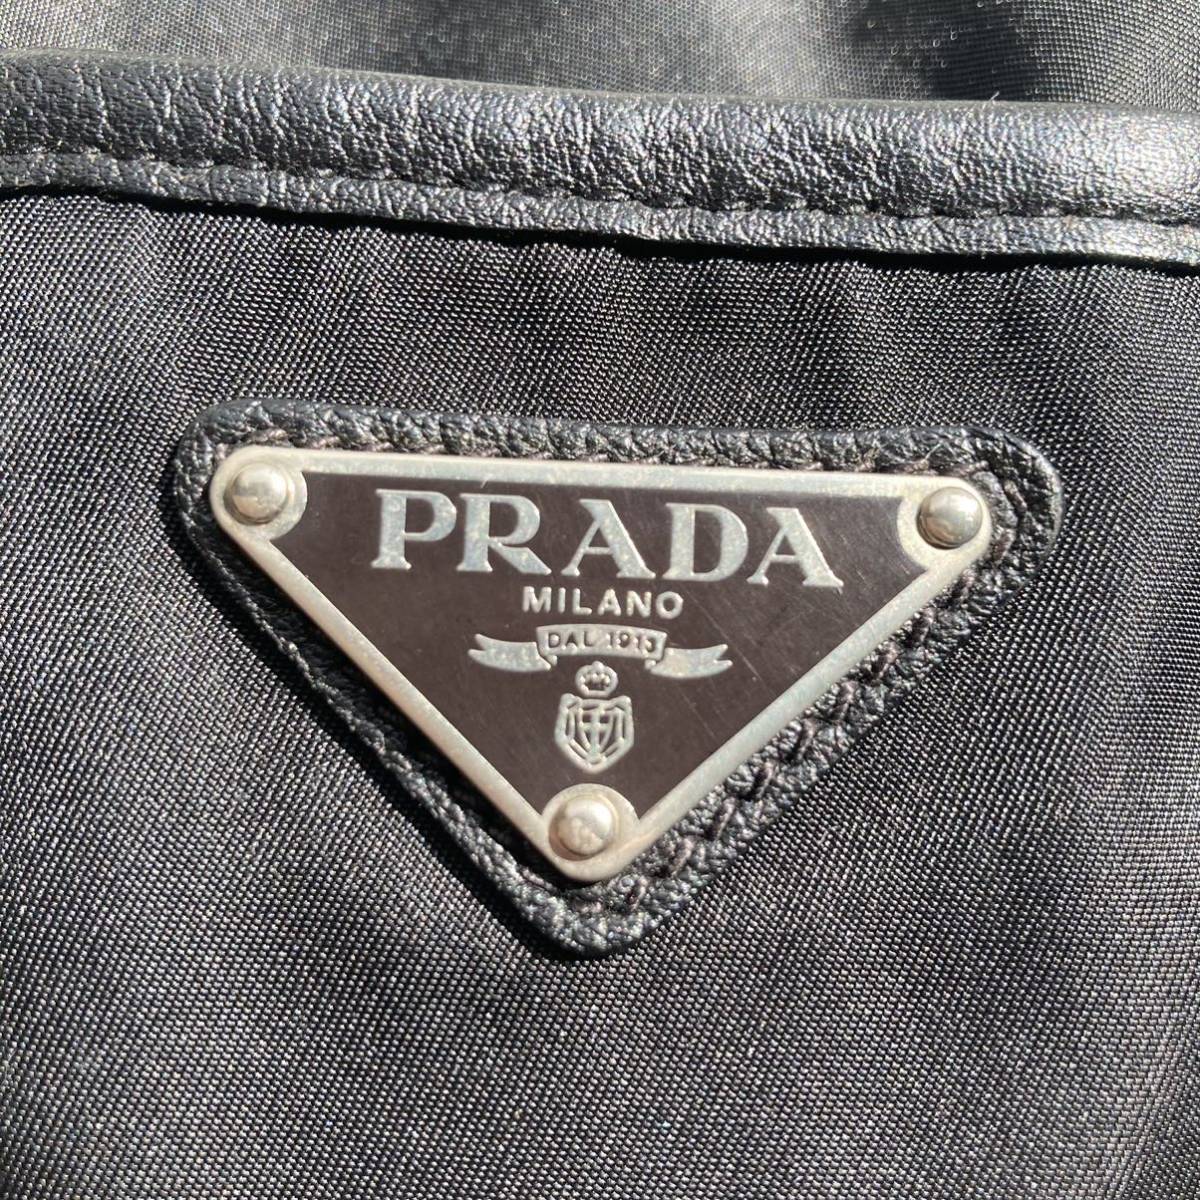 PRADA プラダ トートバッグ 肩掛け ナイロン テスート レザー 三角